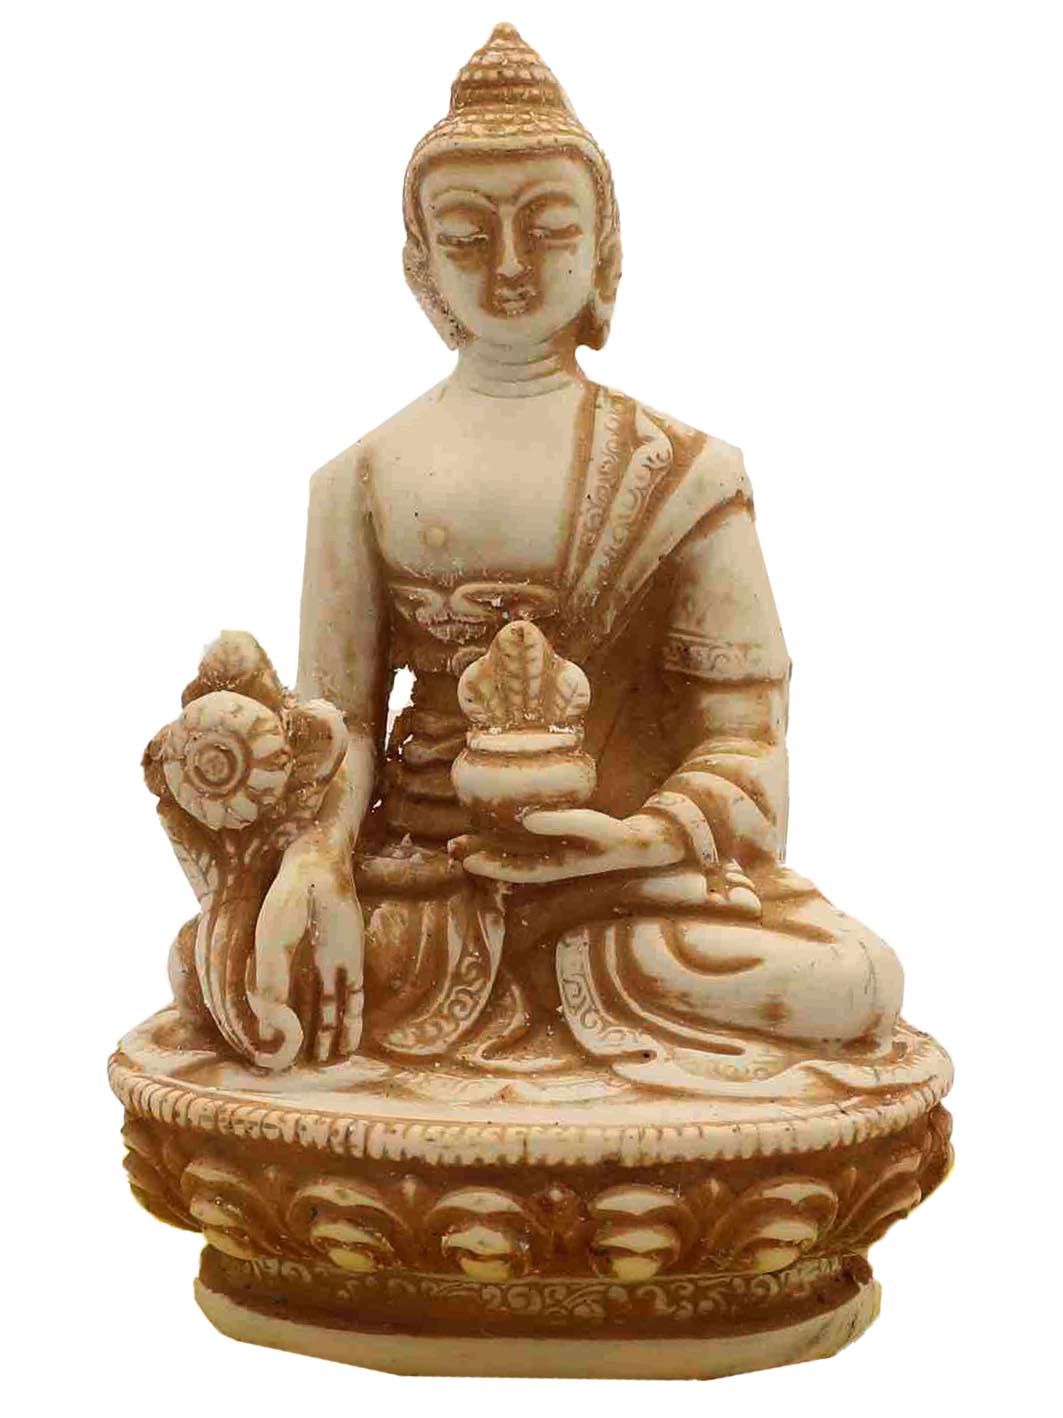 Buddhist Statue Of Medicine Buddha, white Resin Buddha